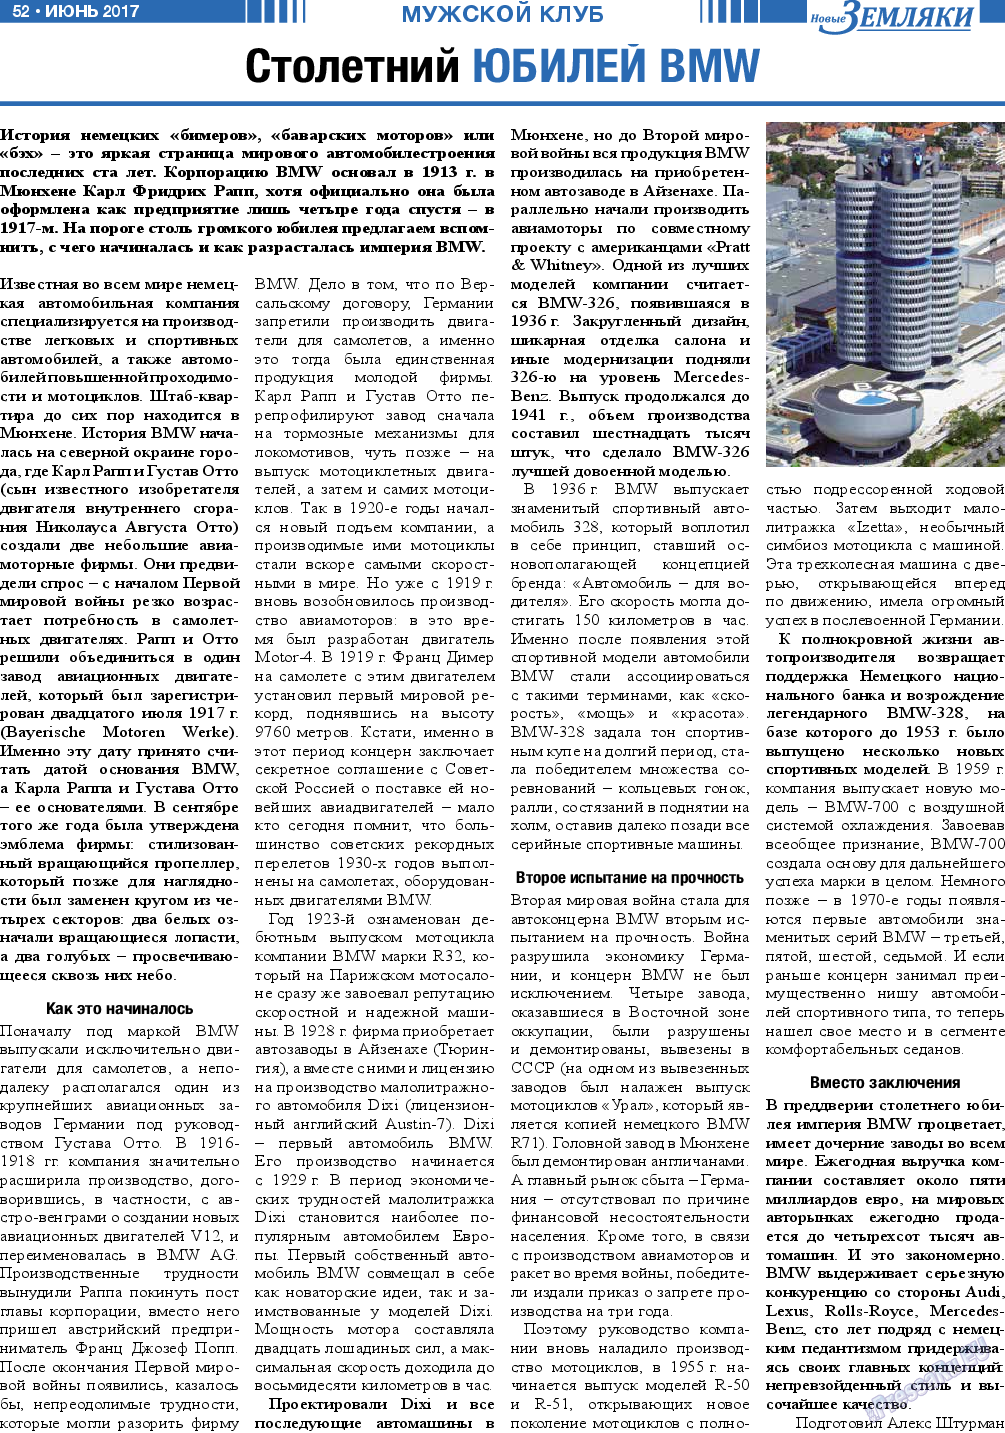 Новые Земляки, газета. 2017 №6 стр.52